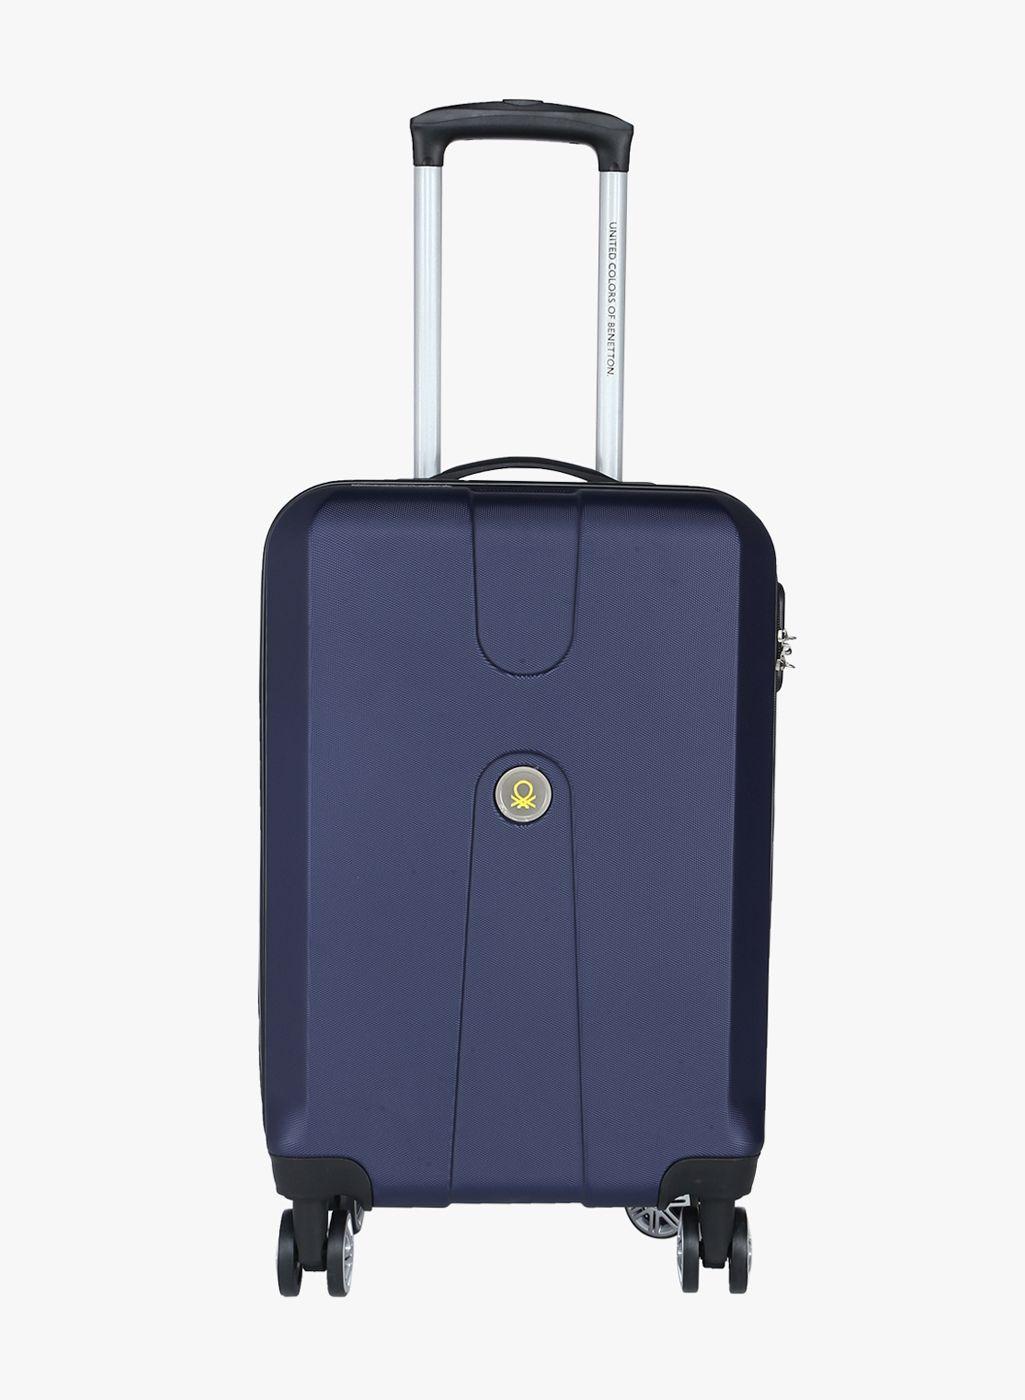 57 cm navy blue 8w cabin hard luggage strolley